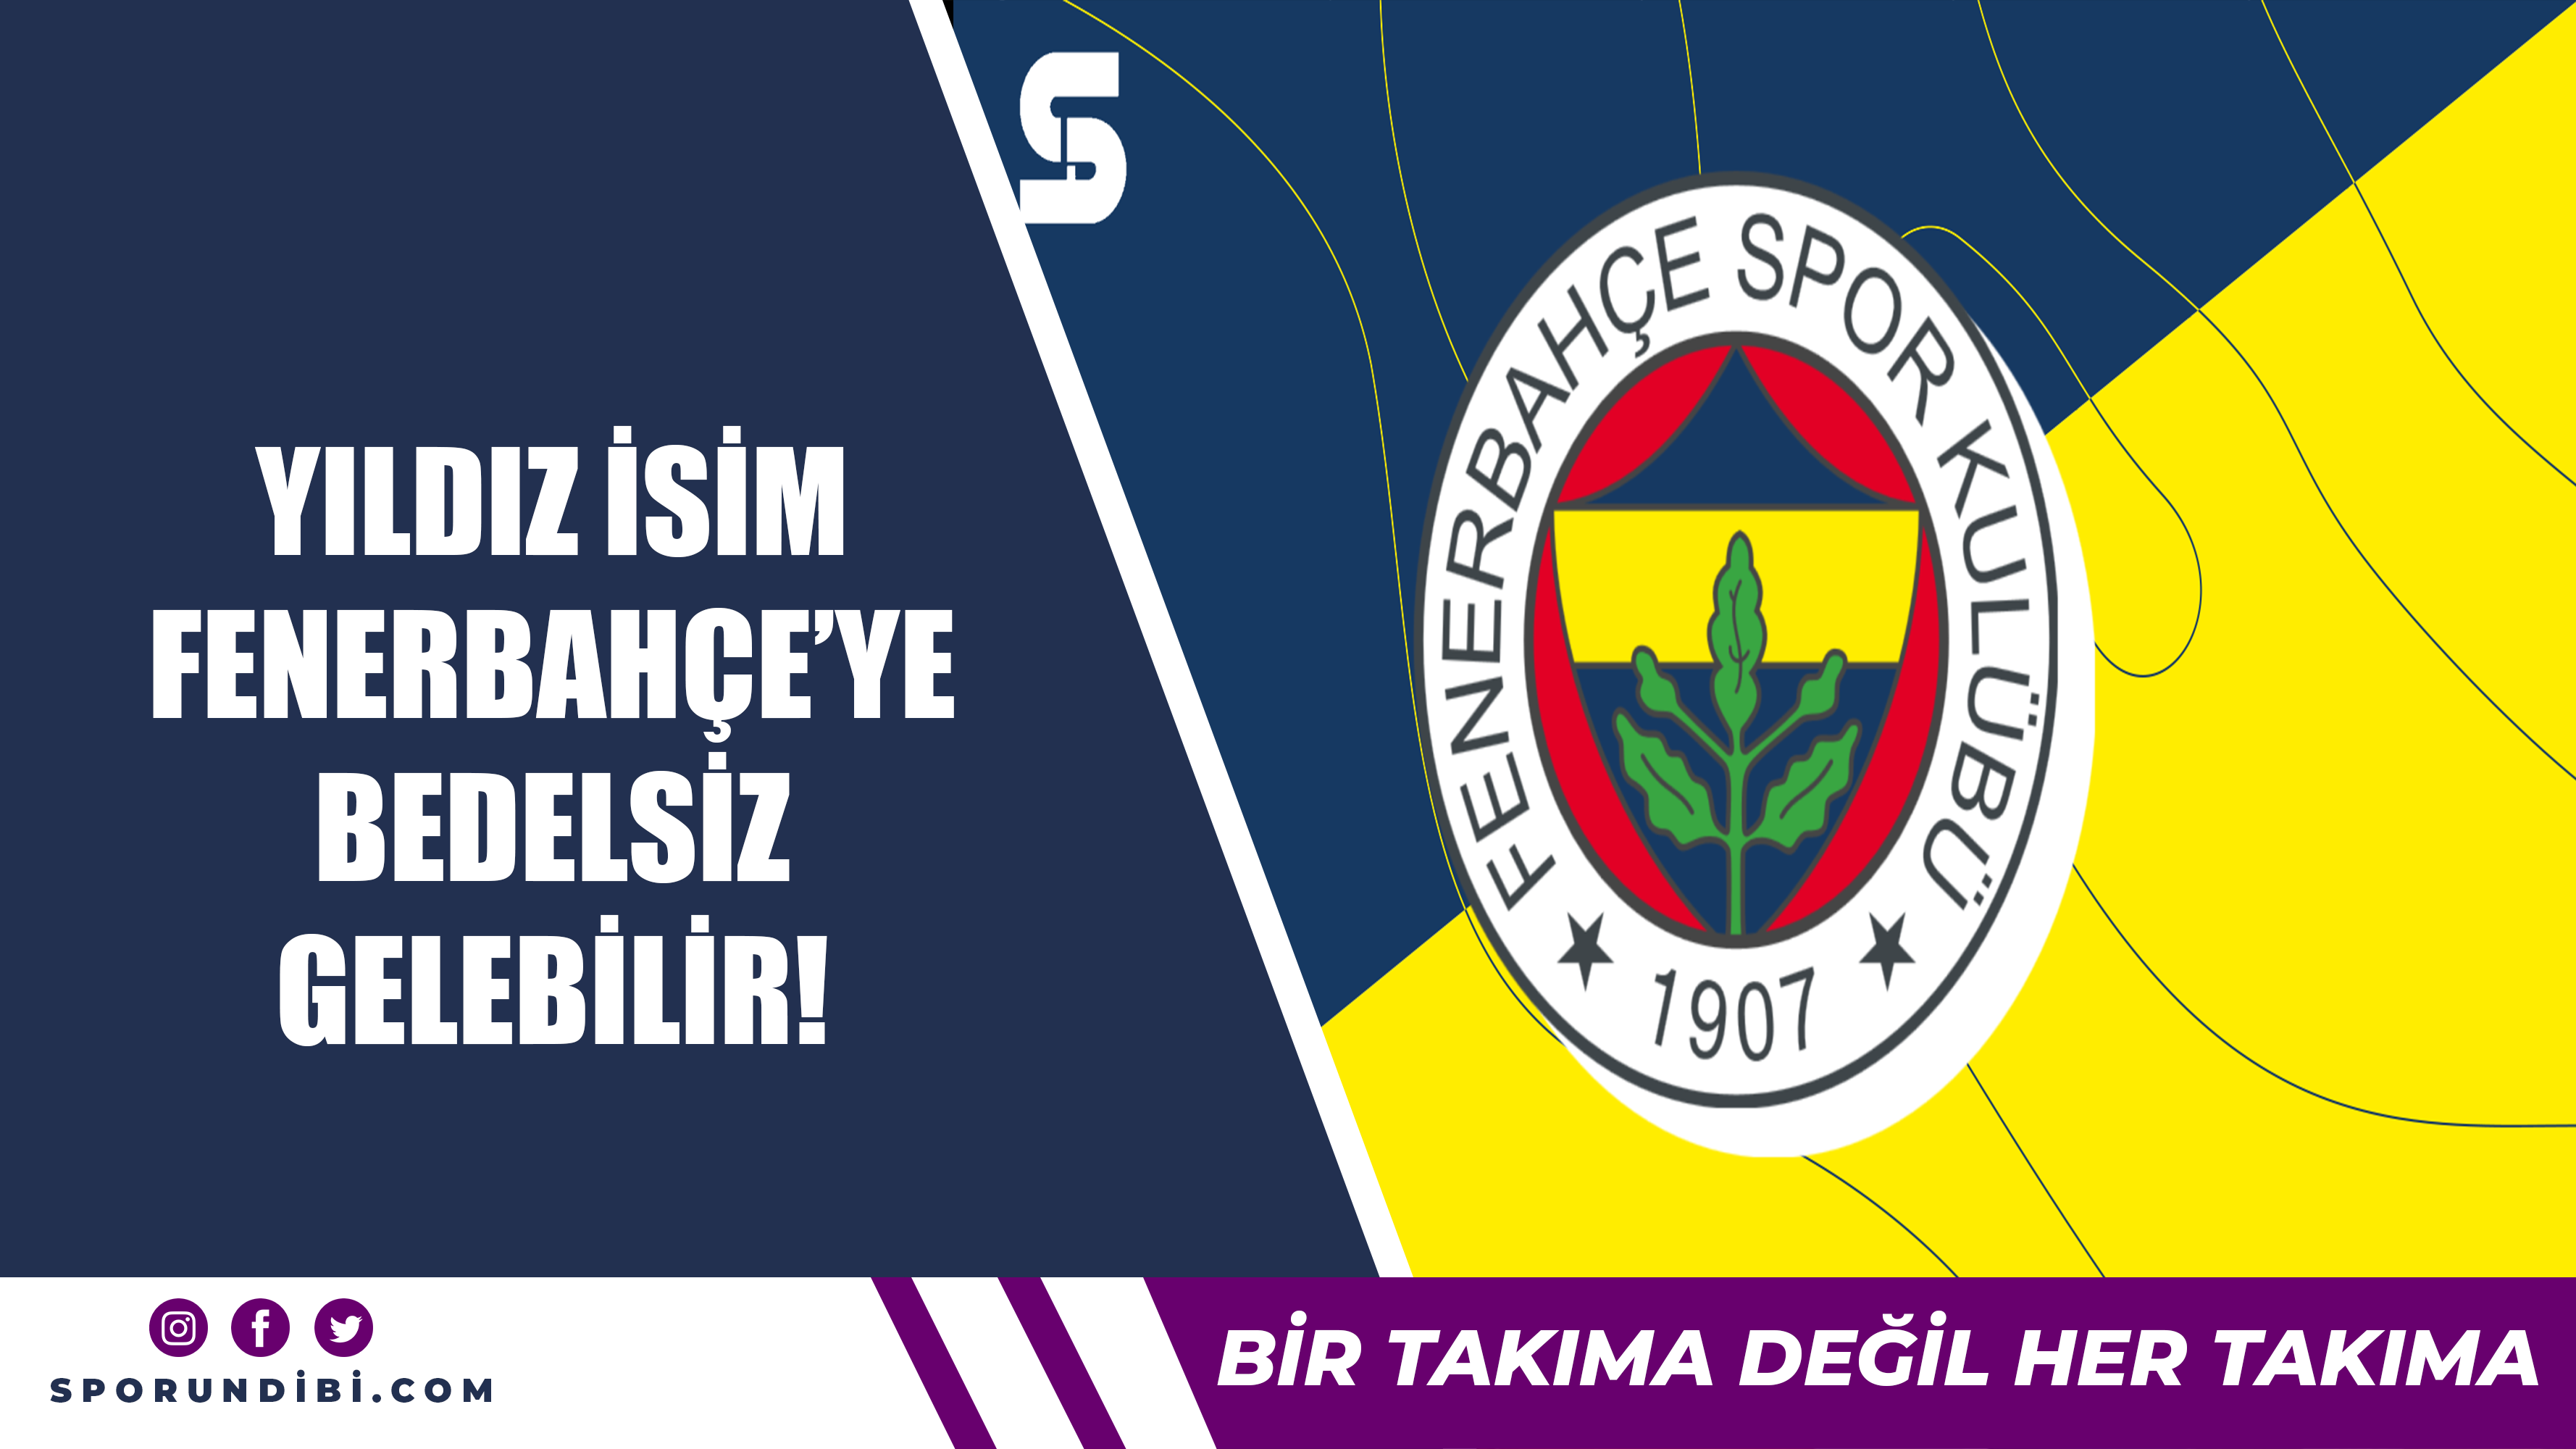 Yıldız isim Fenerbahçe'ye bedelsiz gelebilir!